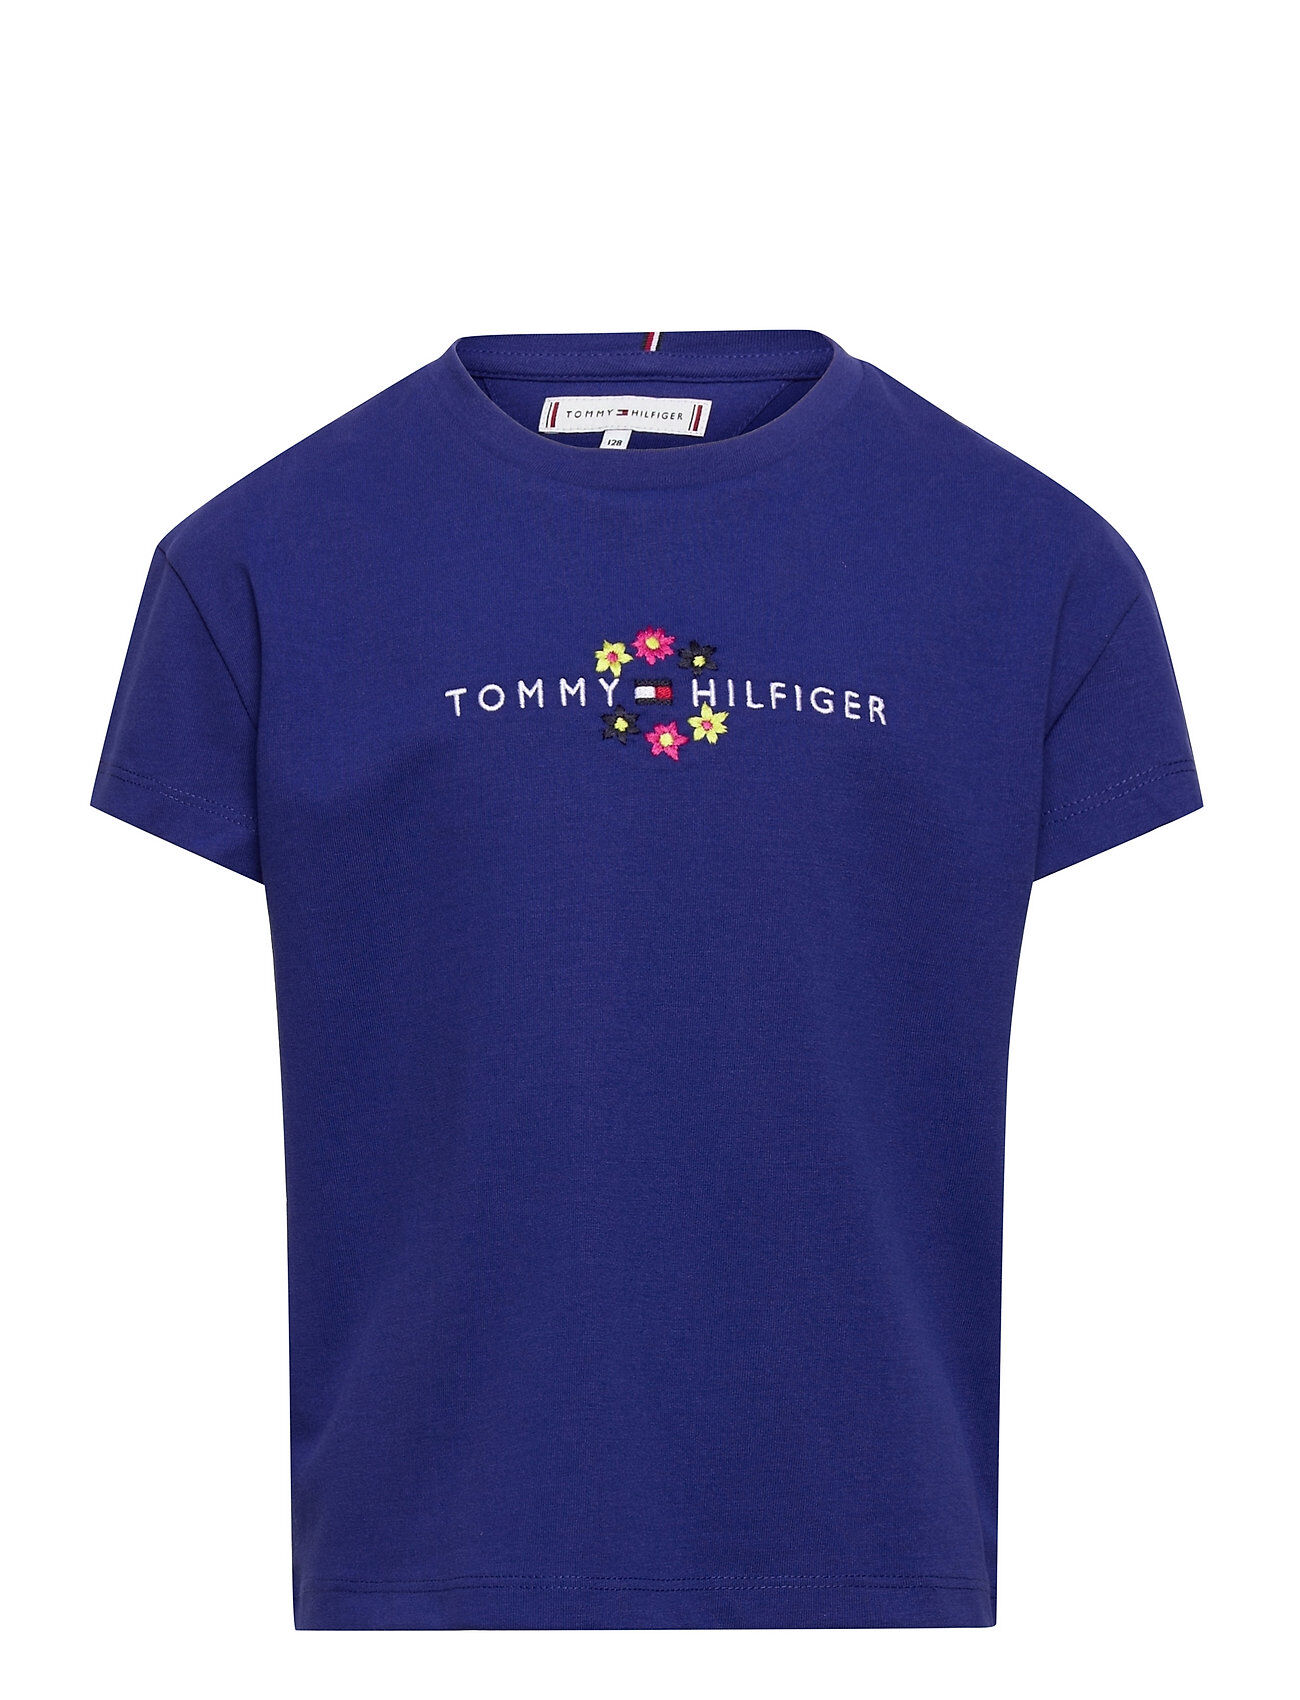 Tommy Hilfiger Floral Tee S/S T-shirts Short-sleeved Blå Tommy Hilfiger